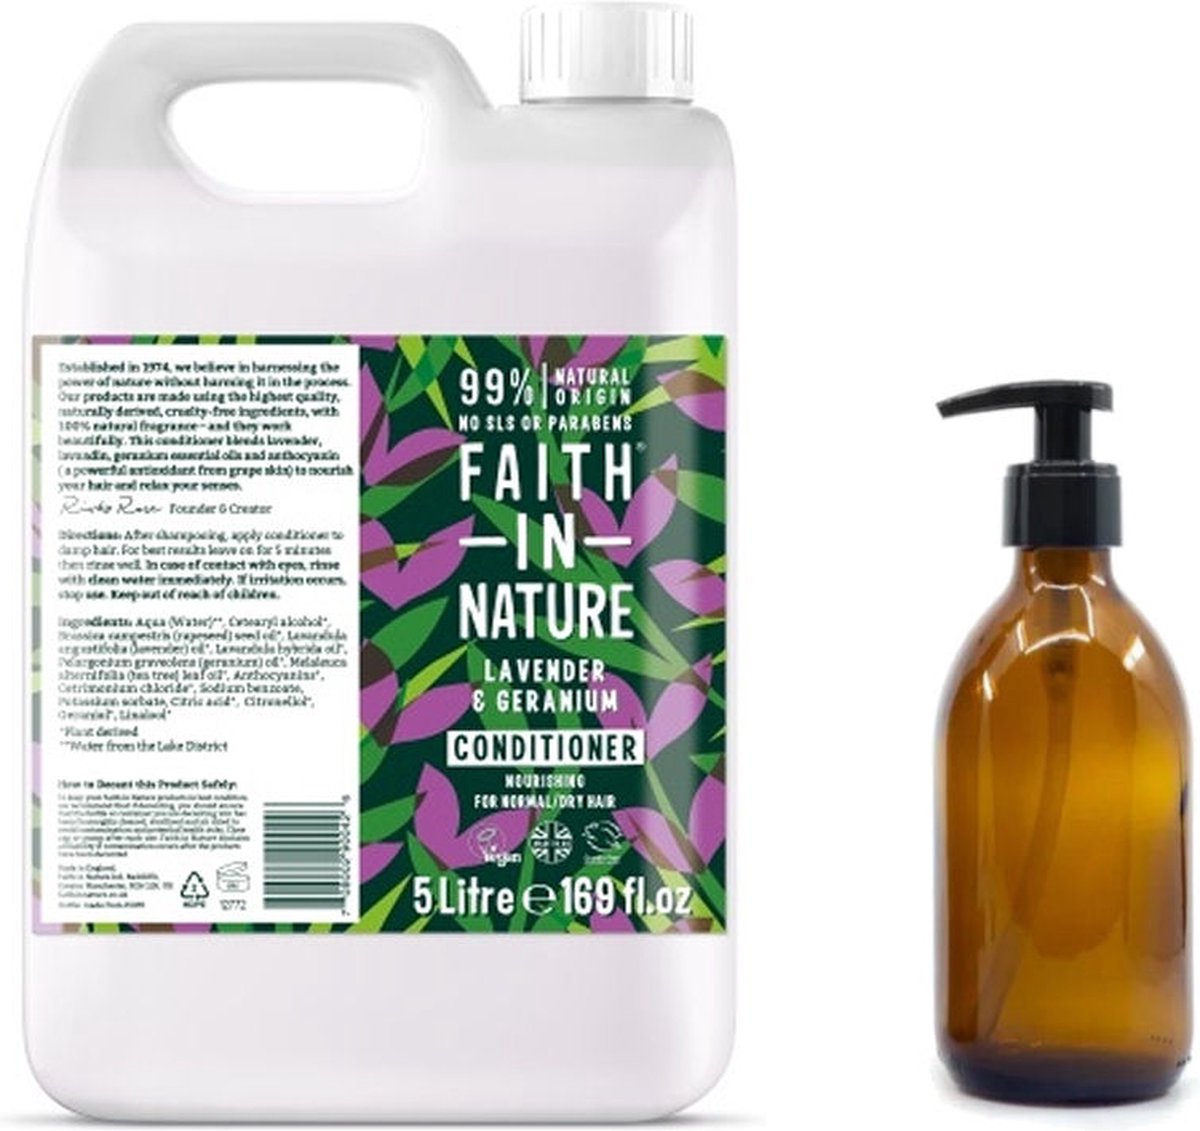 FAITH IN NATURE - Conditioner lavendel & geranium Refill 5 Liter - nu met GRATIS glaze refill fles 500ml